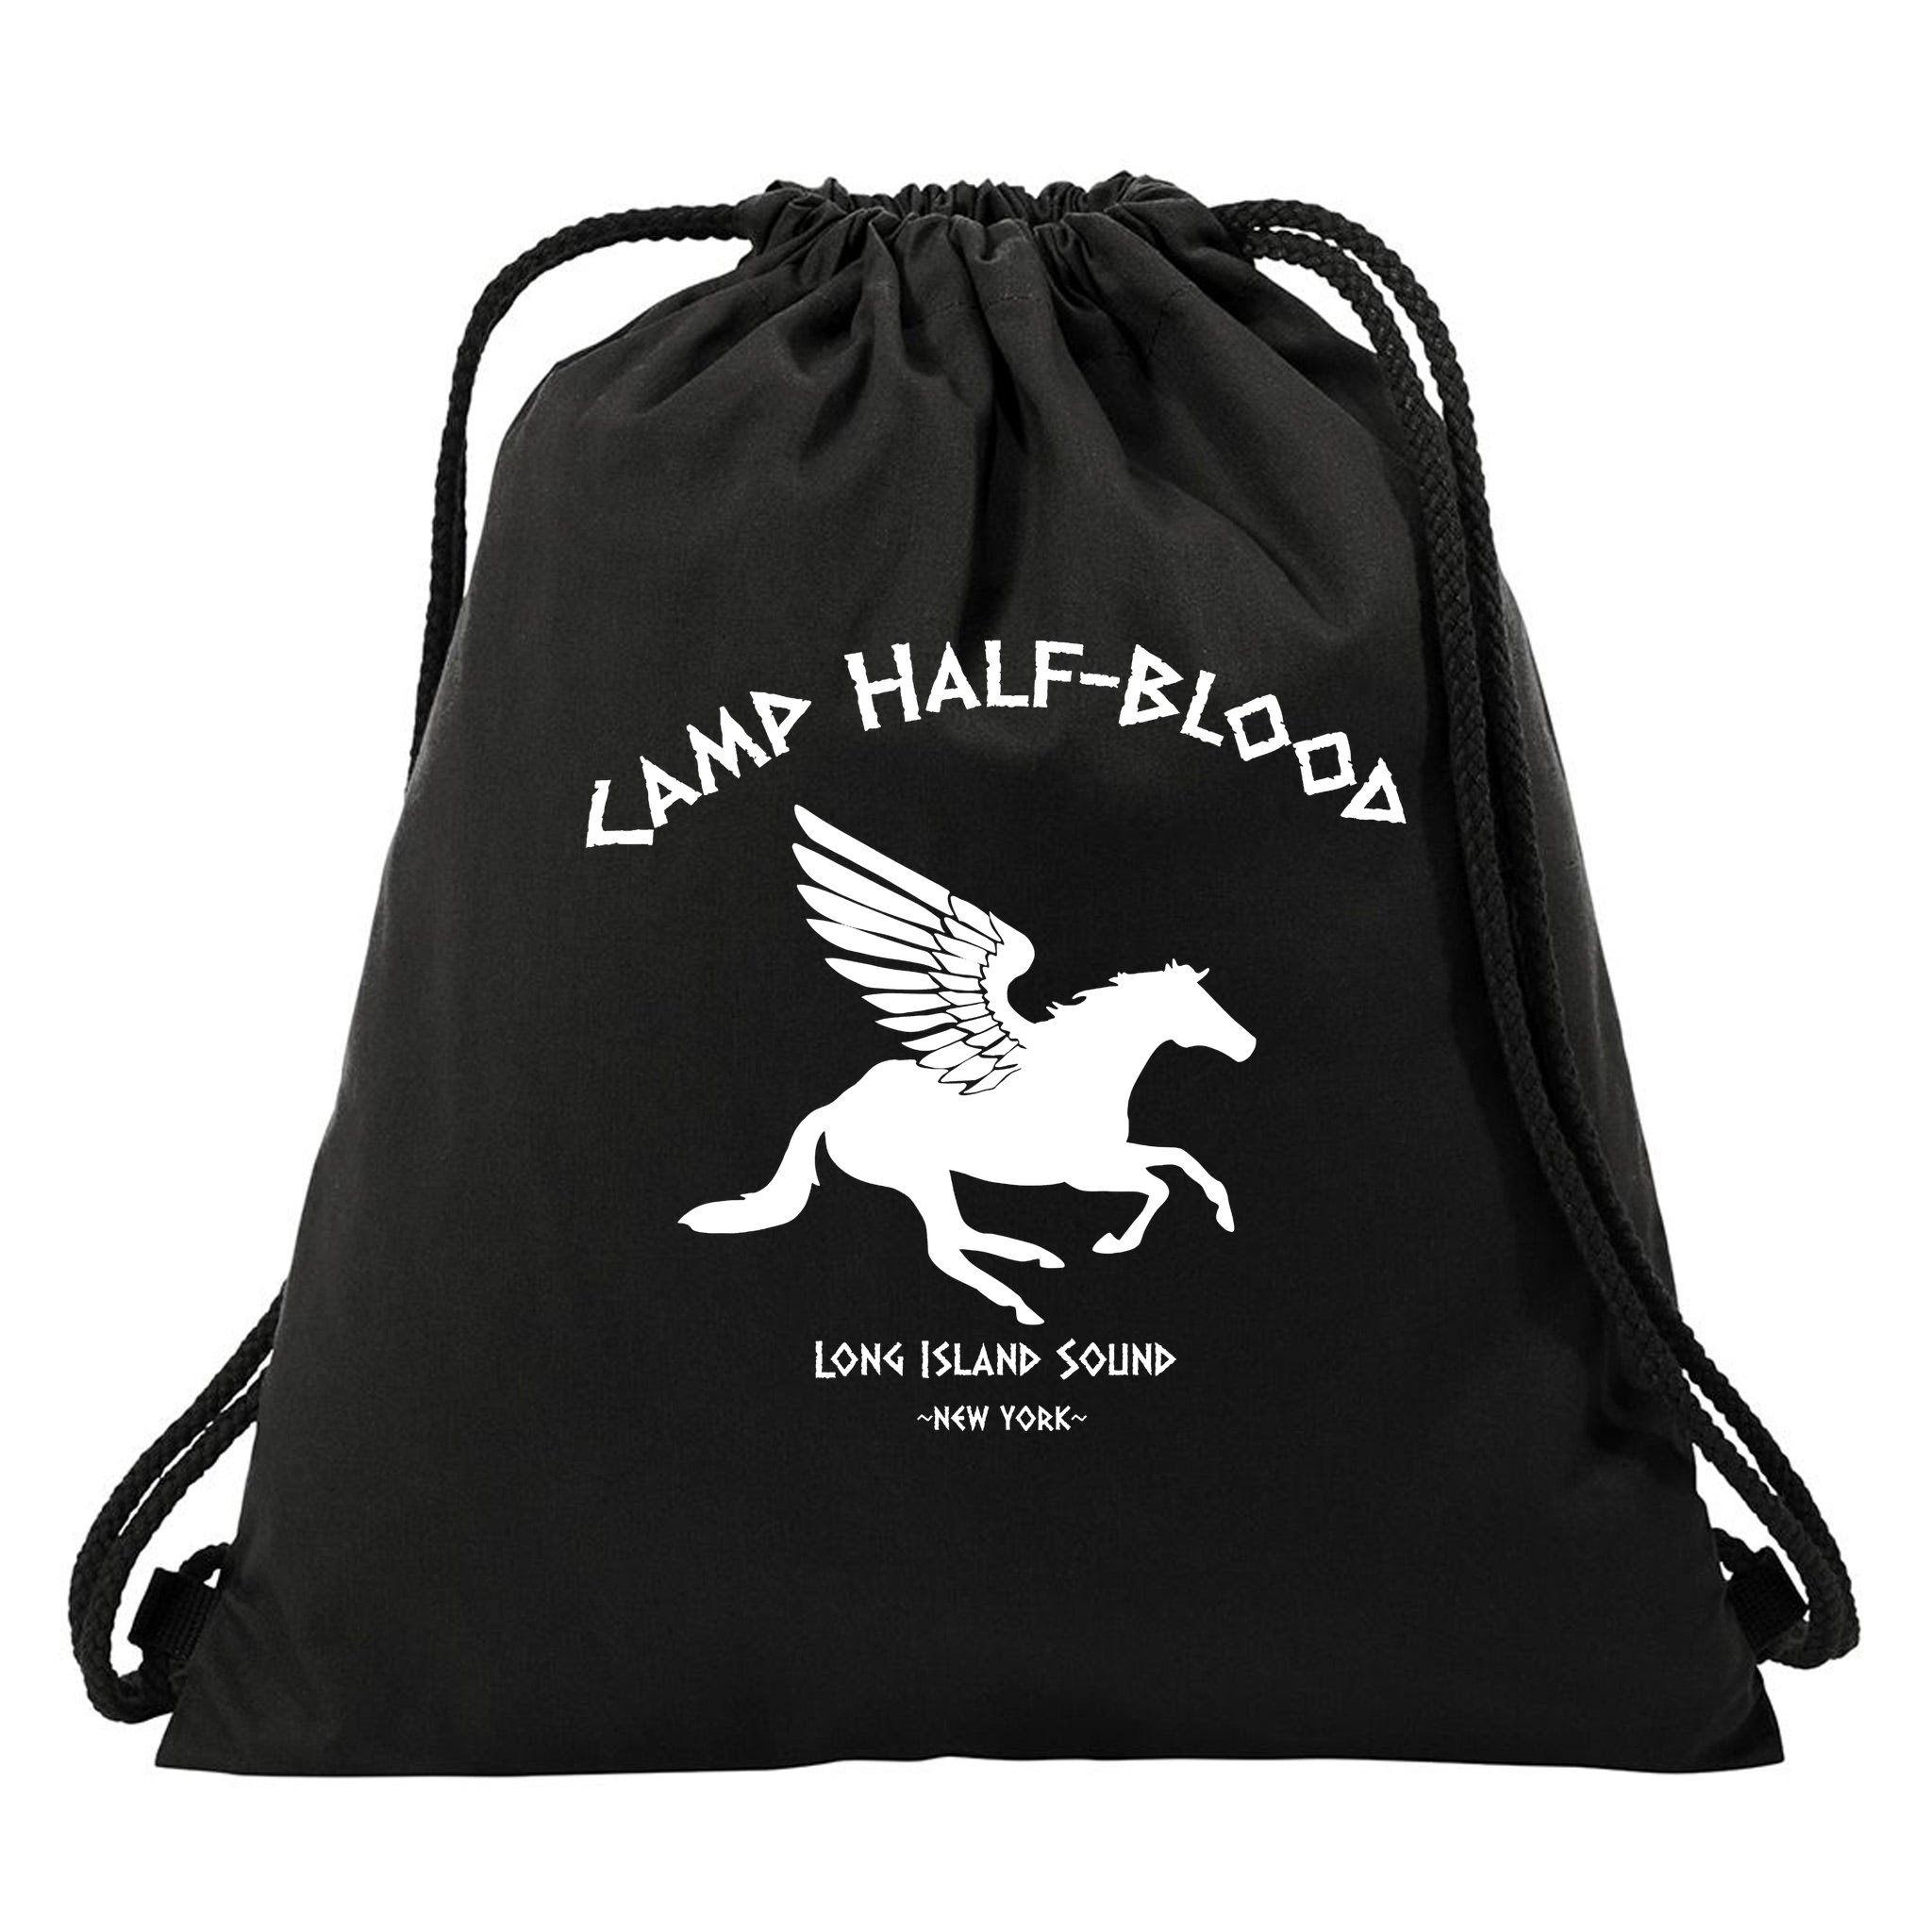 Camp Half Blood Full camp logo' Cotton Drawstring Bag